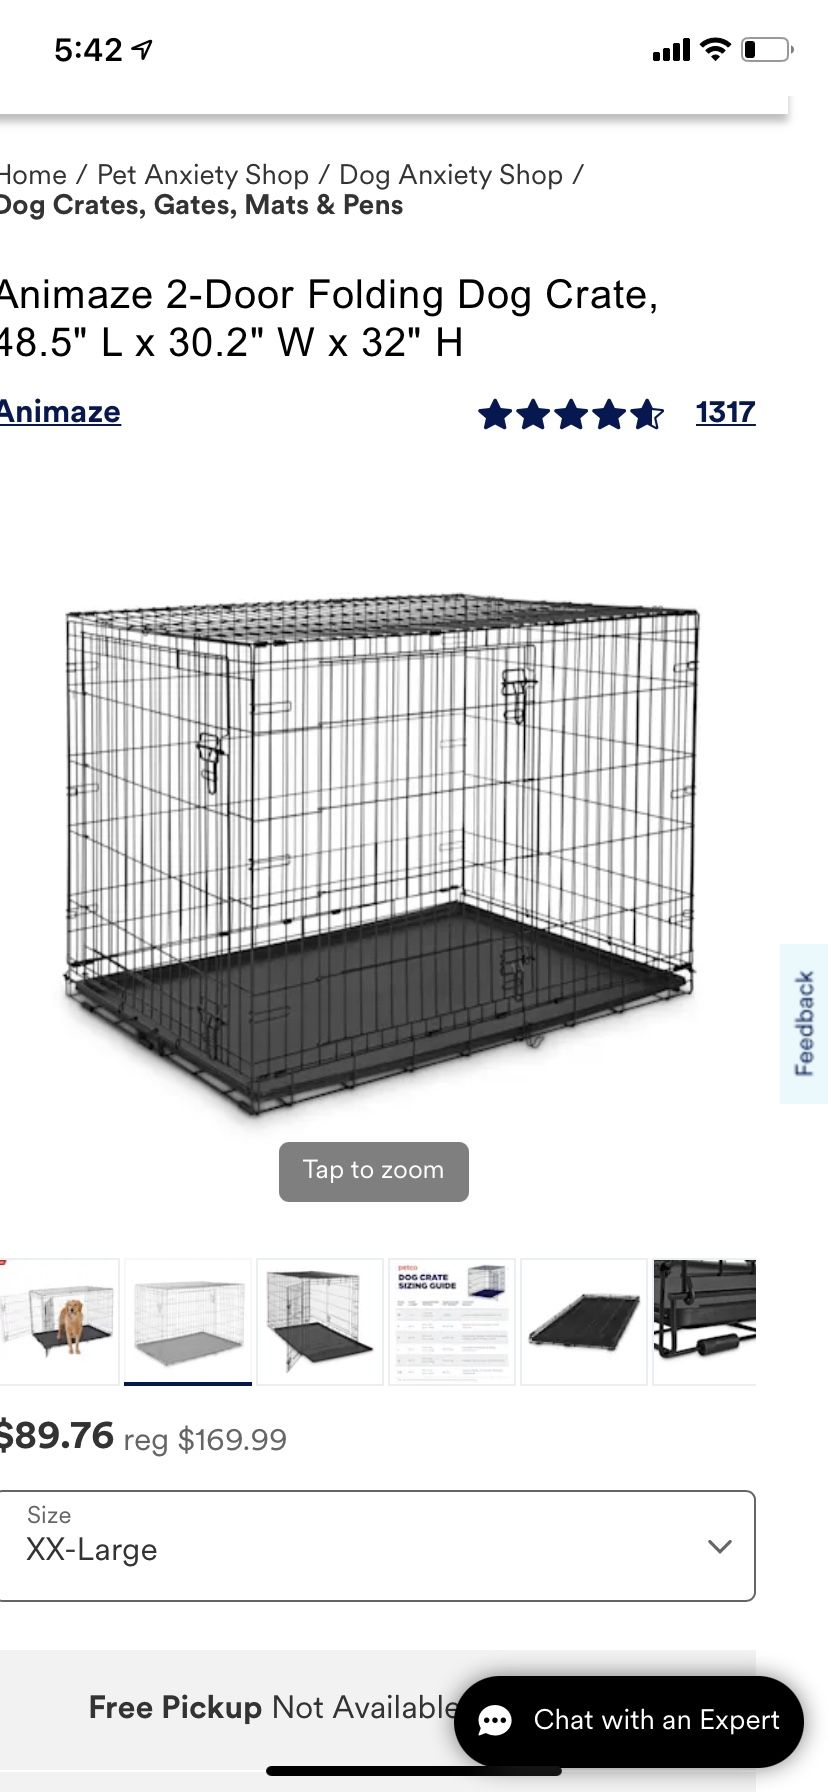 Folding Dog Crate, 48.5" L x 30.2" W x 32" H